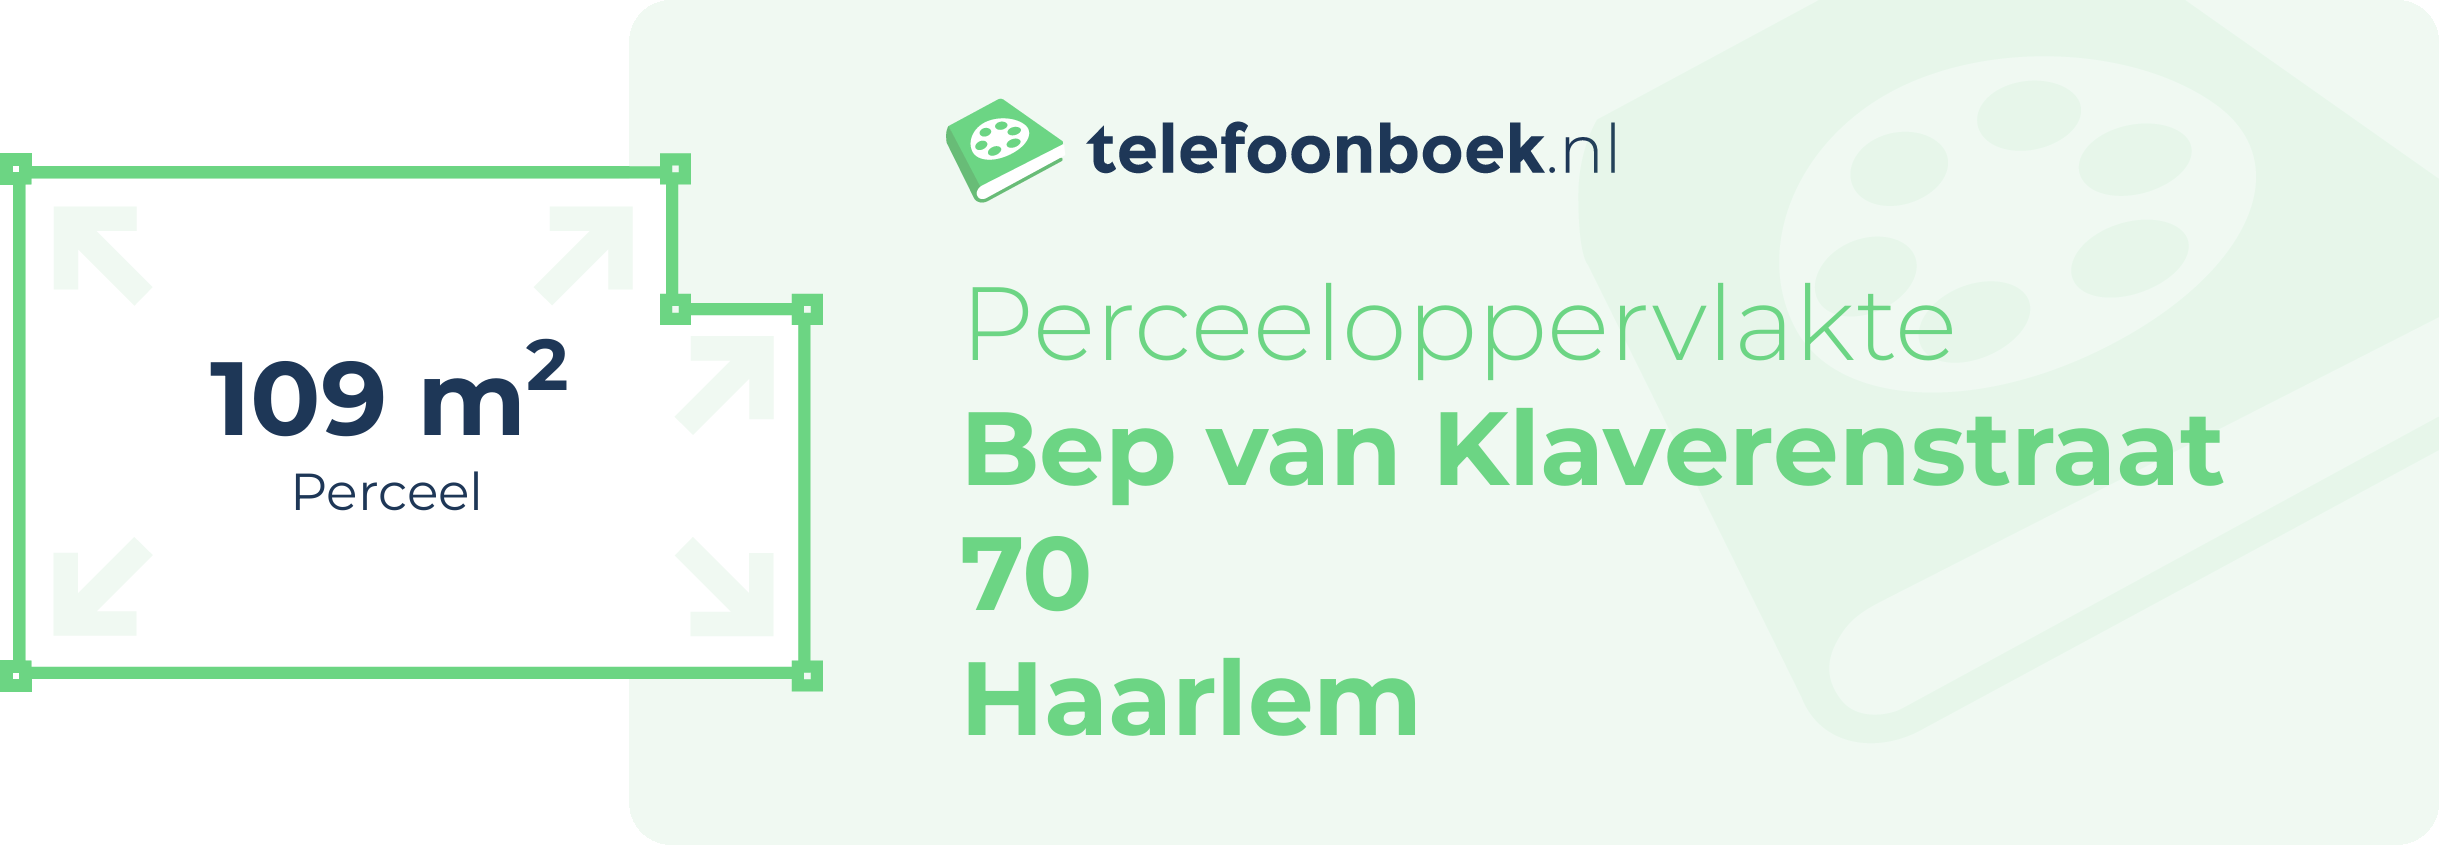 Perceeloppervlakte Bep Van Klaverenstraat 70 Haarlem